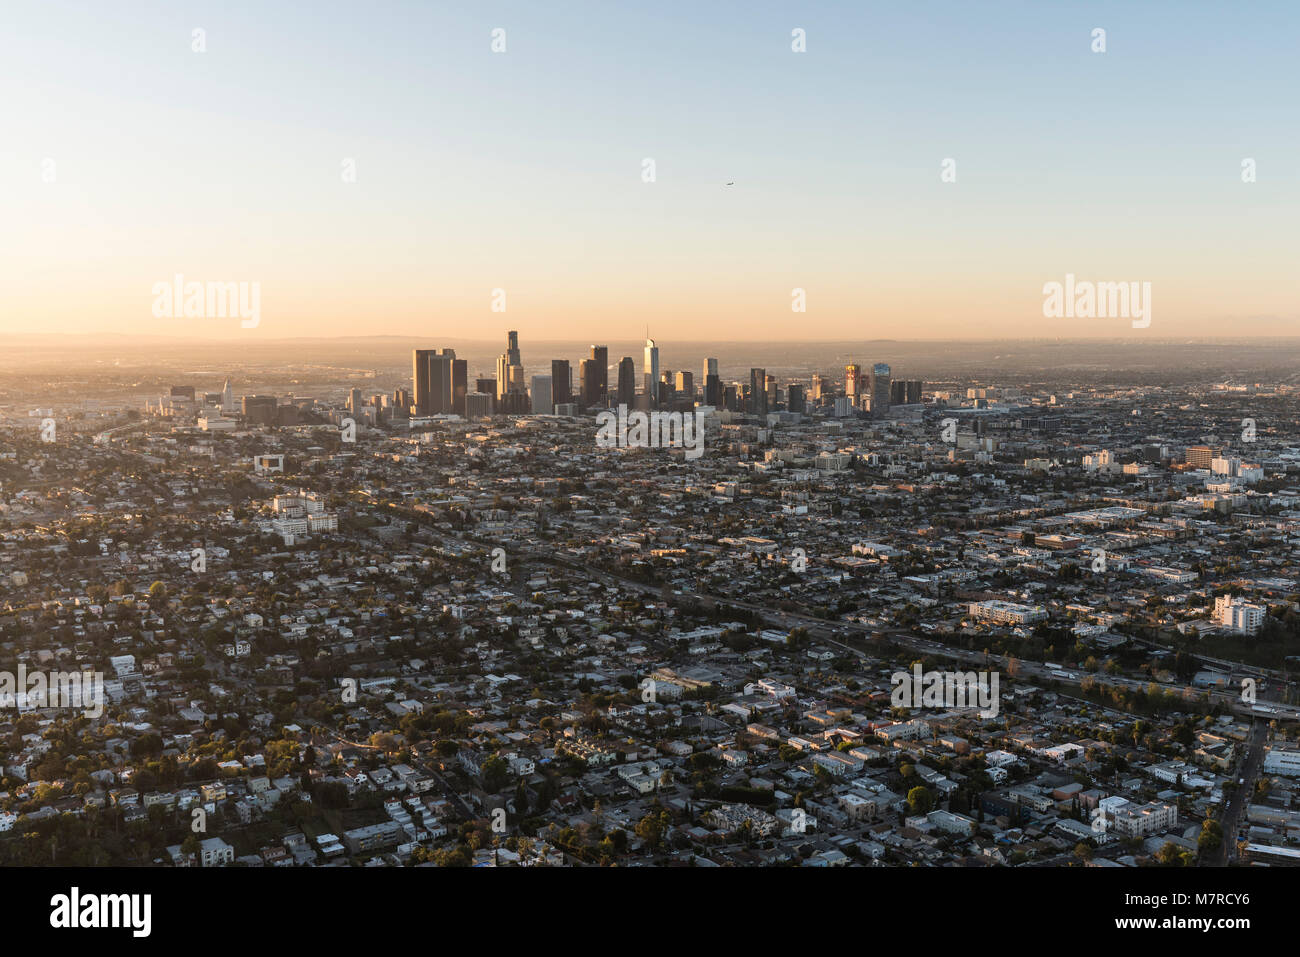 La mattina presto vista aerea di edifici e strade urbane vicino al centro cittadino di Los Angeles, California. Foto Stock